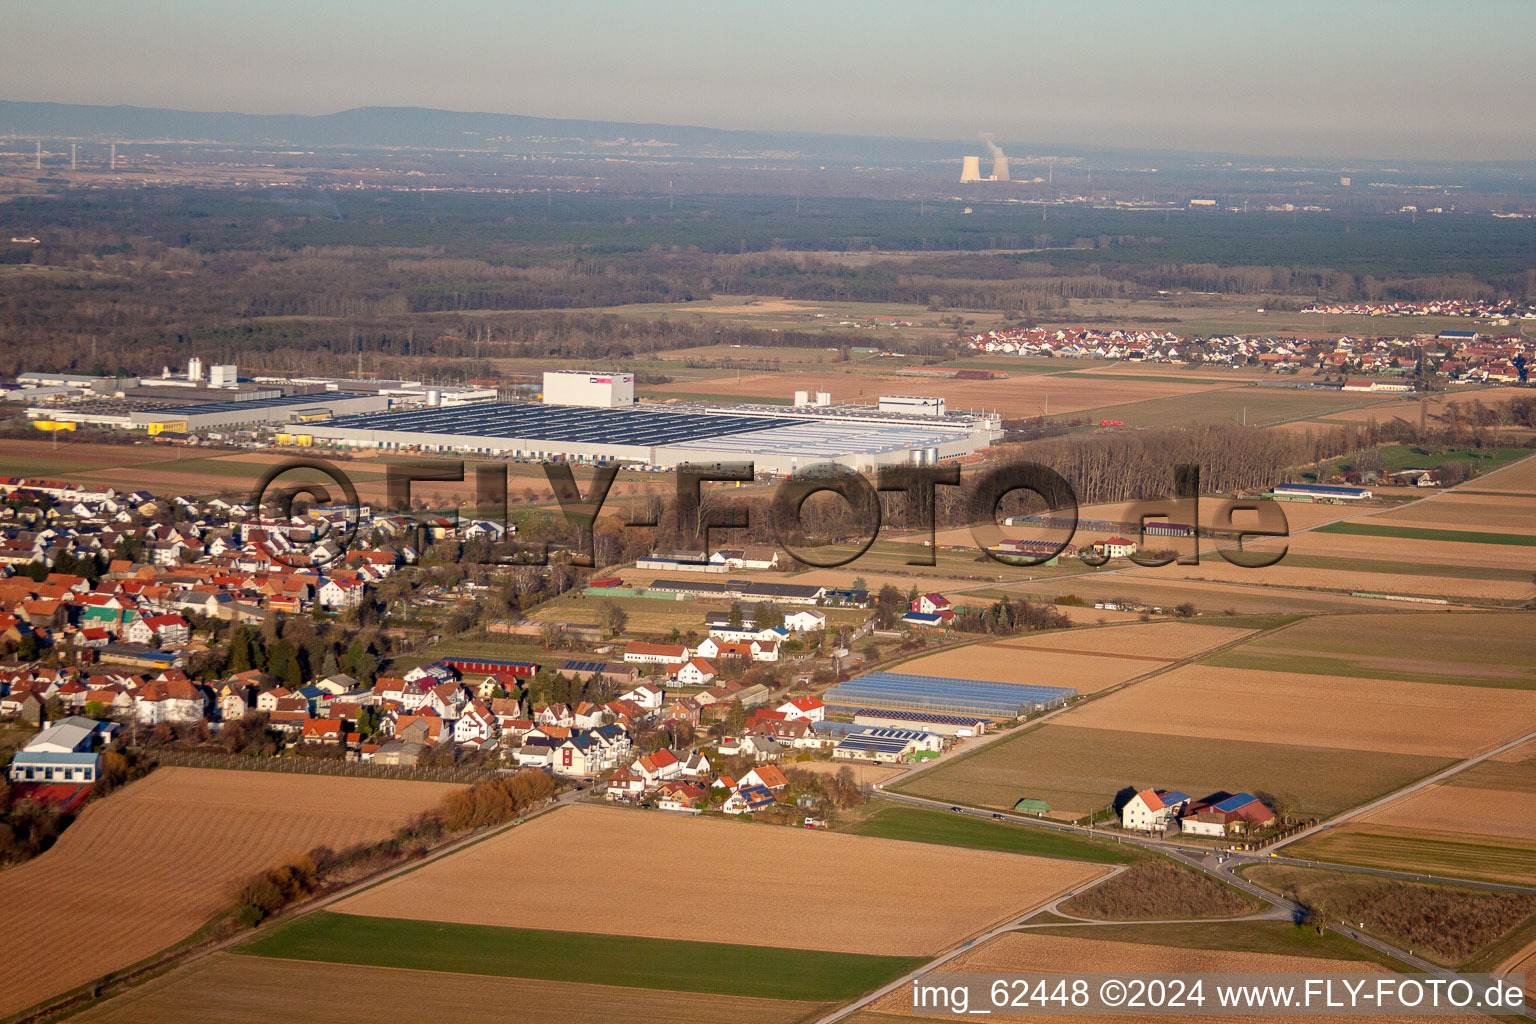 Offenbach an der Queich dans le département Rhénanie-Palatinat, Allemagne vue d'en haut